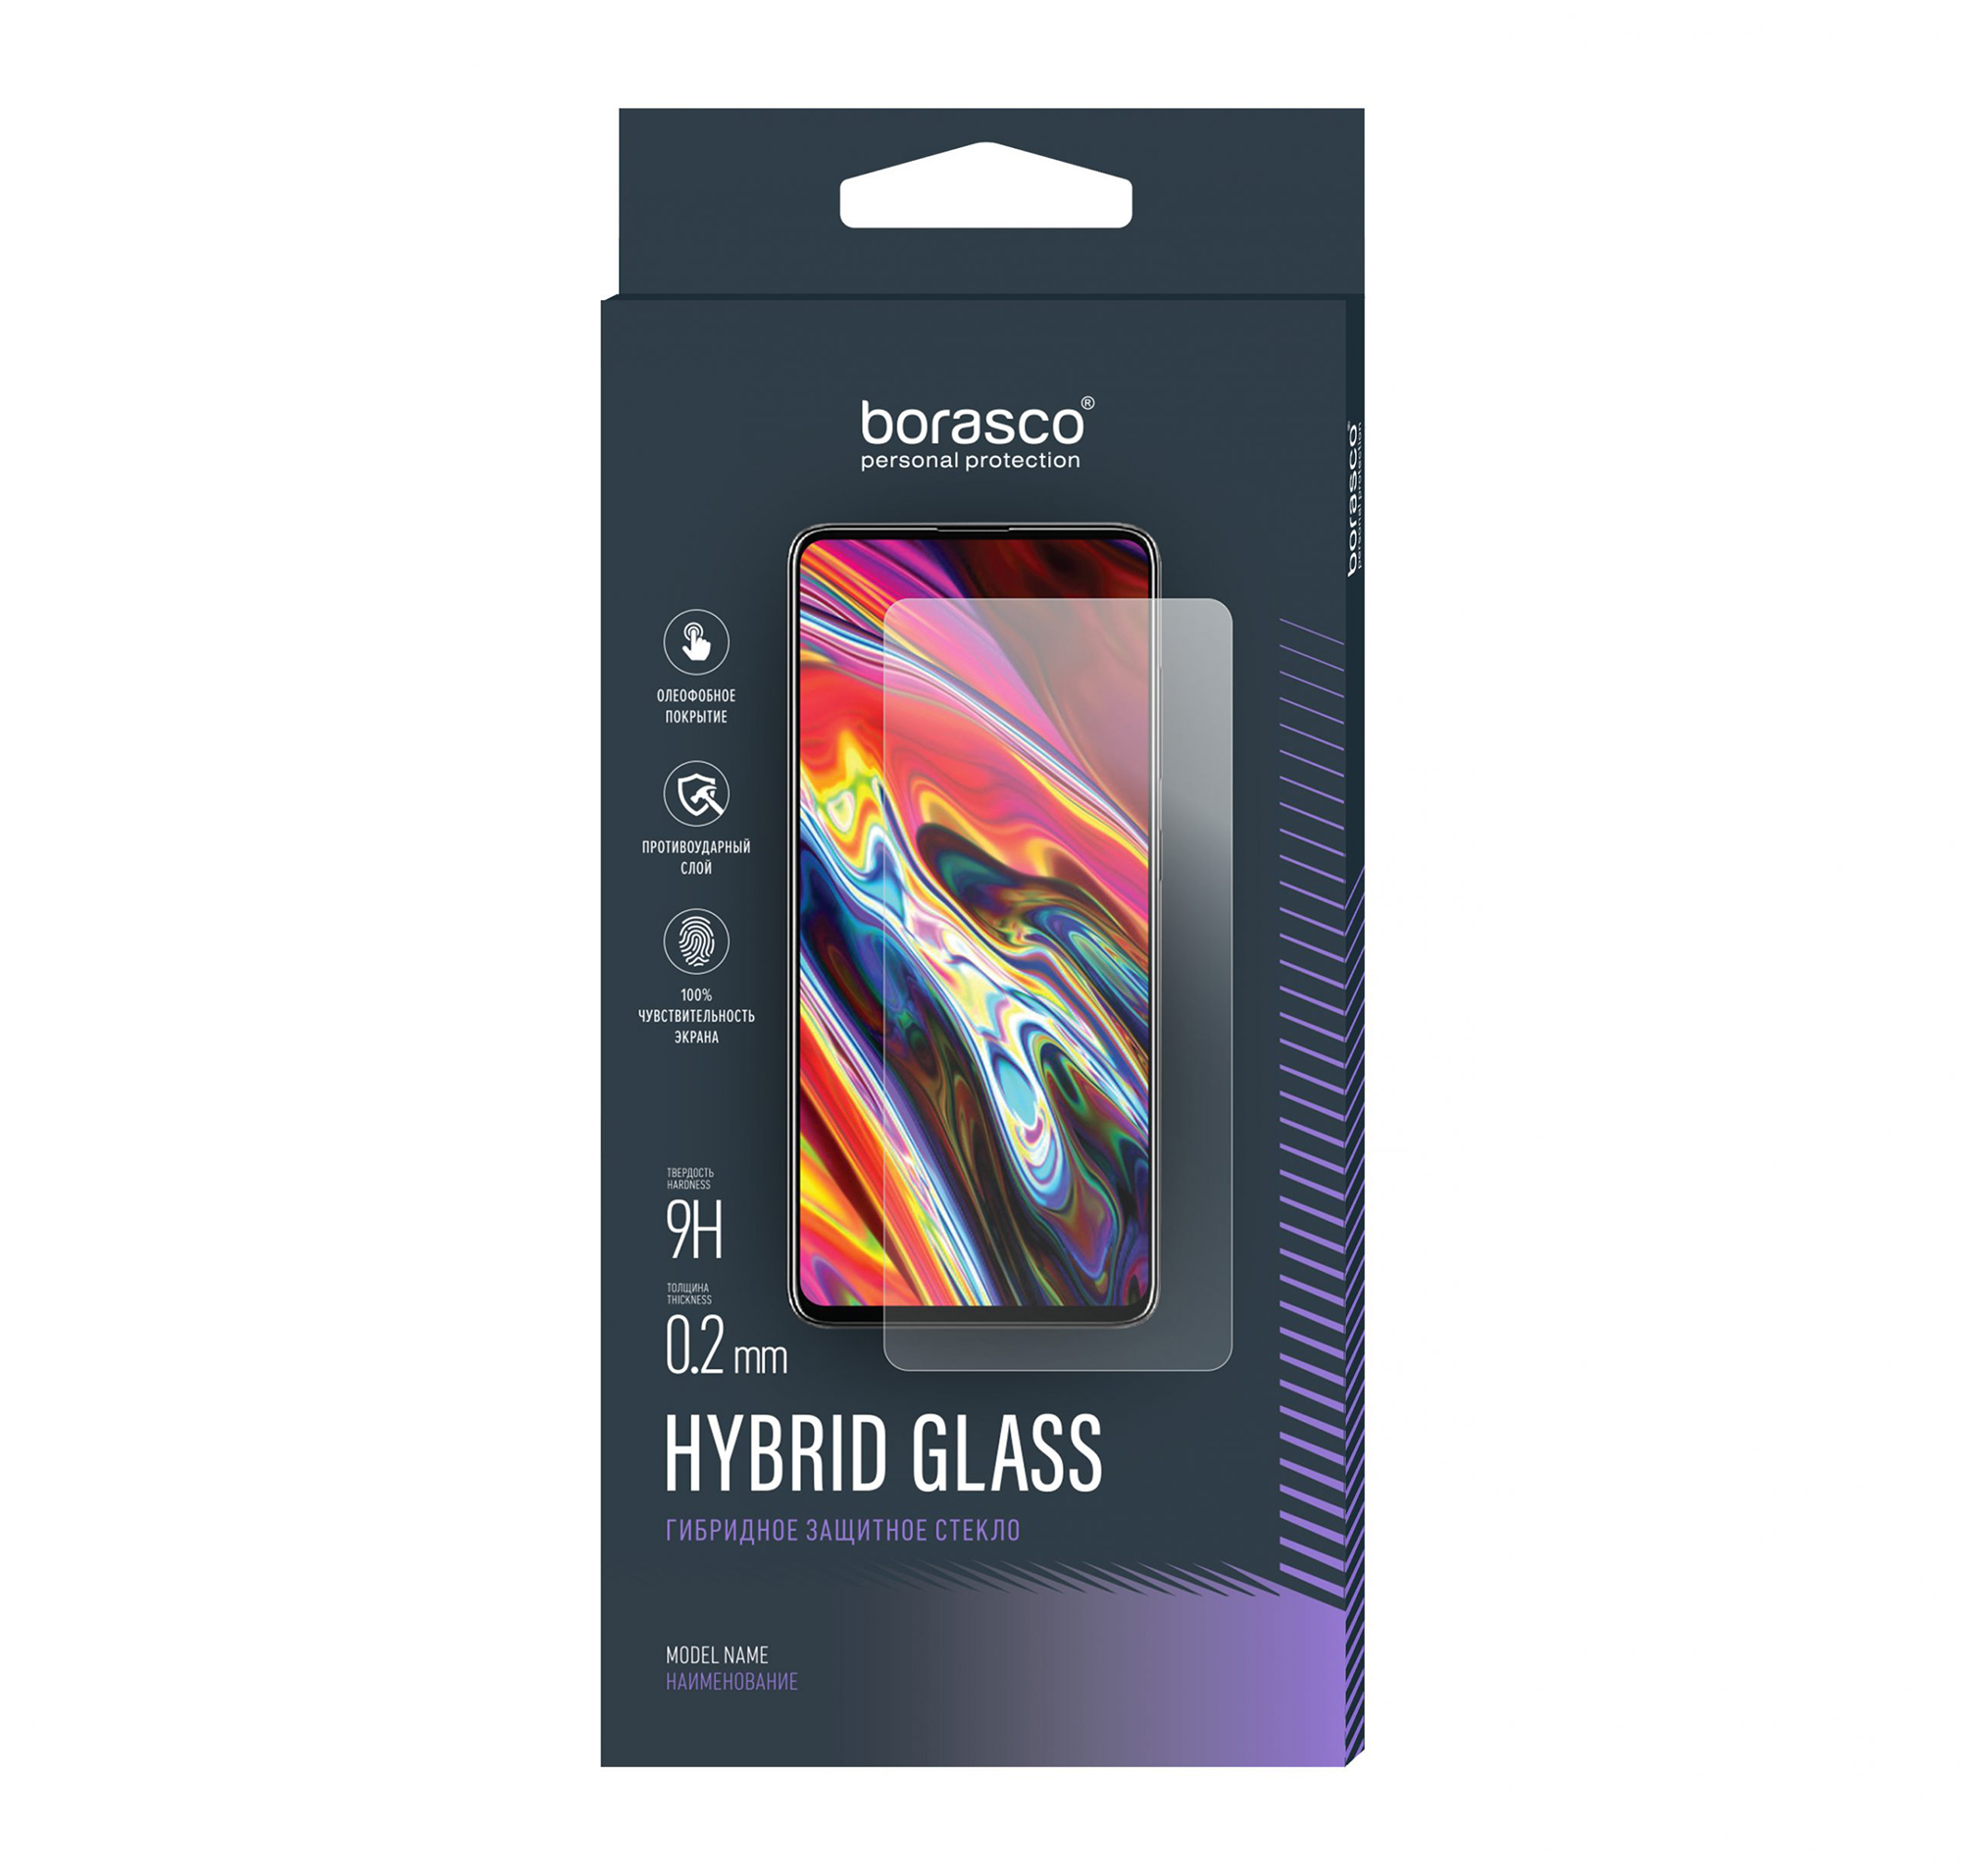 Защитное стекло Hybrid Glass для Samsung Galaxy Tab S6 lite стекло защитное borasco hybrid glass samsung galaxy tab a7 lite 8 7 прозрачное